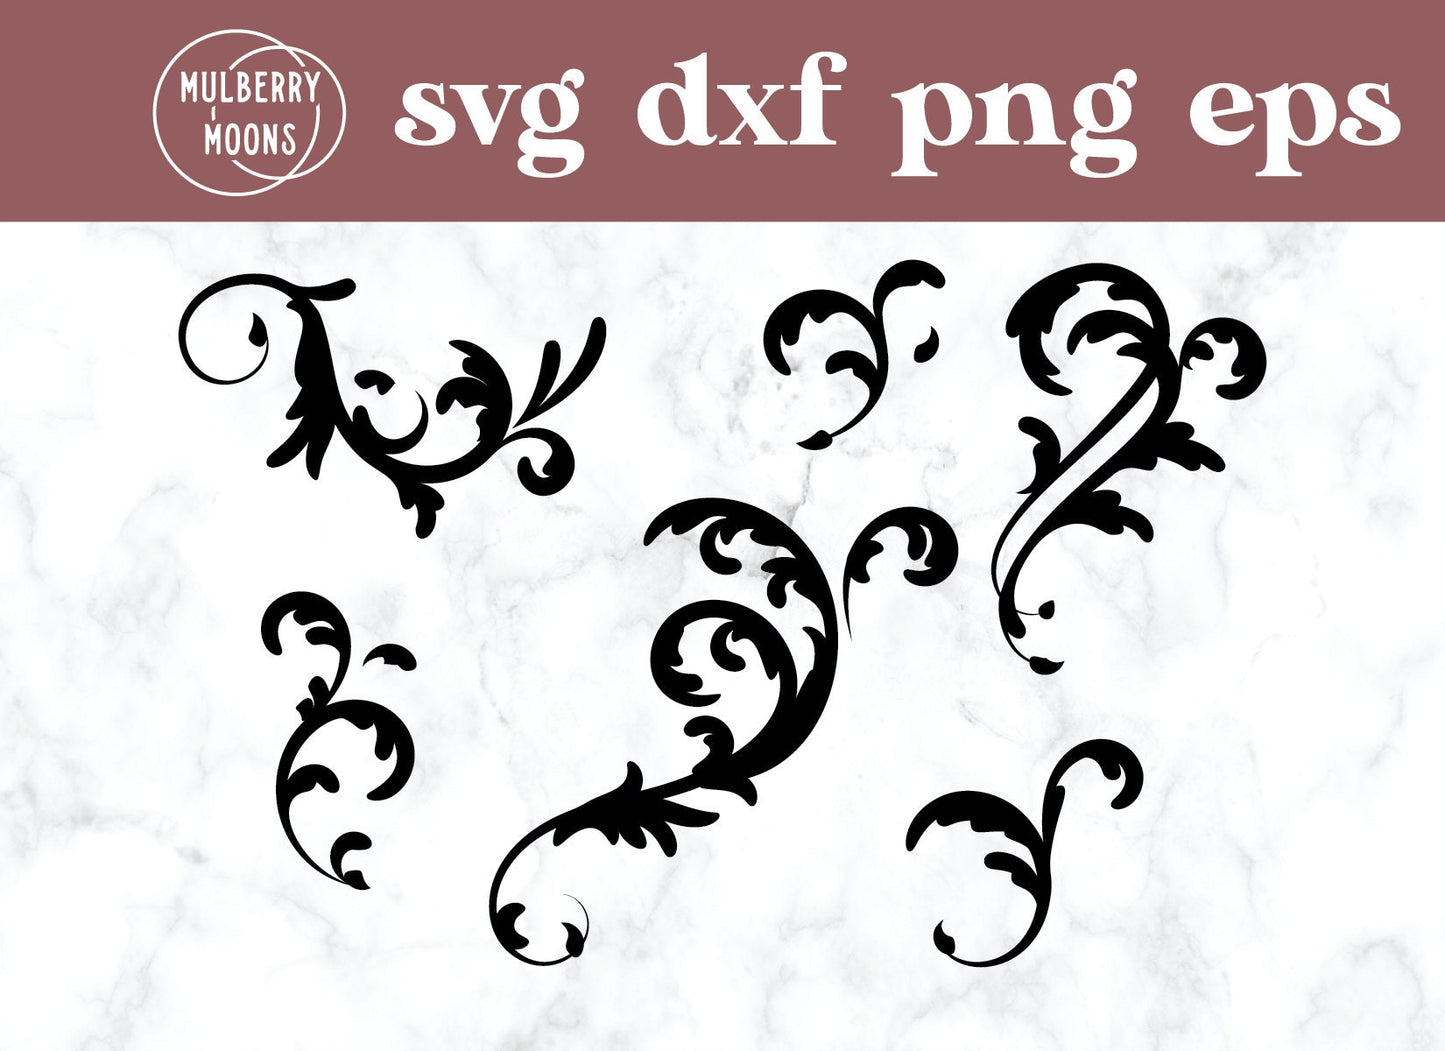 Filigree/Swirls/Scrolls SVG